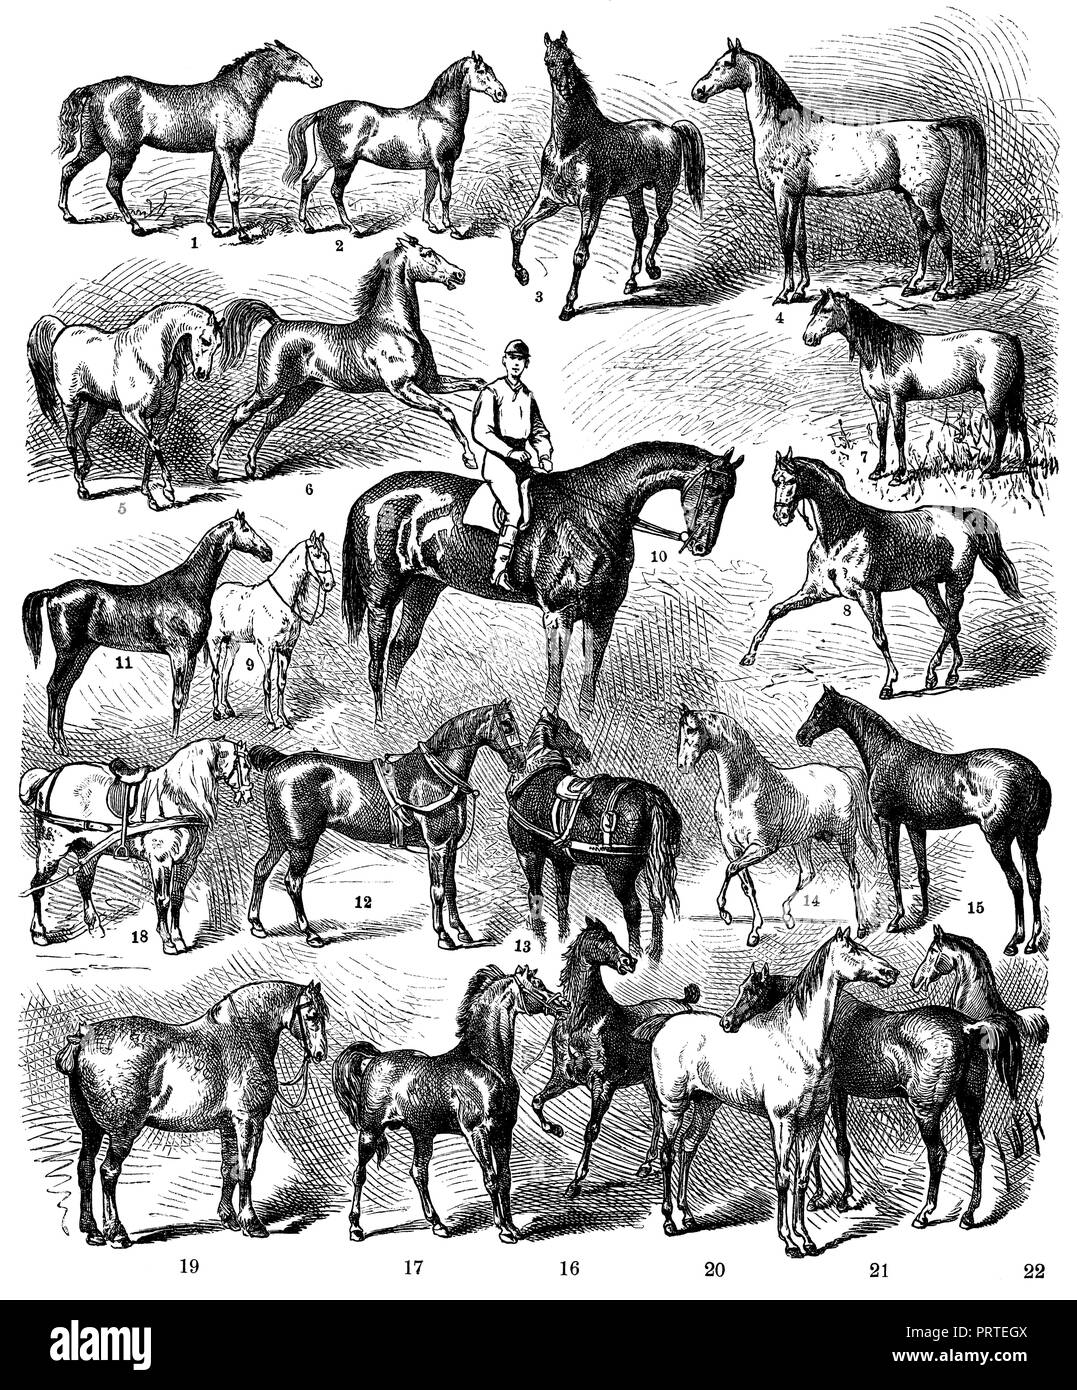 Corse di cavalli. 1) Tarpan, 2) Tangus, 3) Turkmainatti (Arabi), 4) Tajar (Arabi), 5) marocchini, 6) circassi, 7) steppa russa Cavallo, 8) Russo Harttraber, 9) Gara moldavo, 10) Inglese delle corse ippiche purosangue (), 11) Caccia inglese Cavallo (Hunter), 12) carrello inglese Cavallo (Cleveland), 13) Suffolk Punch (Inghilterra), 14) Arabi, 15) Limousin (Francia), 16) Mellerand (Francia), 17) Cotentin (FRANCIA ), 18) Percheron, 19) Boulogne, 20) Mecklenburg dal prigioniero Alt-Ivenacker., 21) cavalli prussiano (famiglia di Roderich e Rufo), Foto Stock